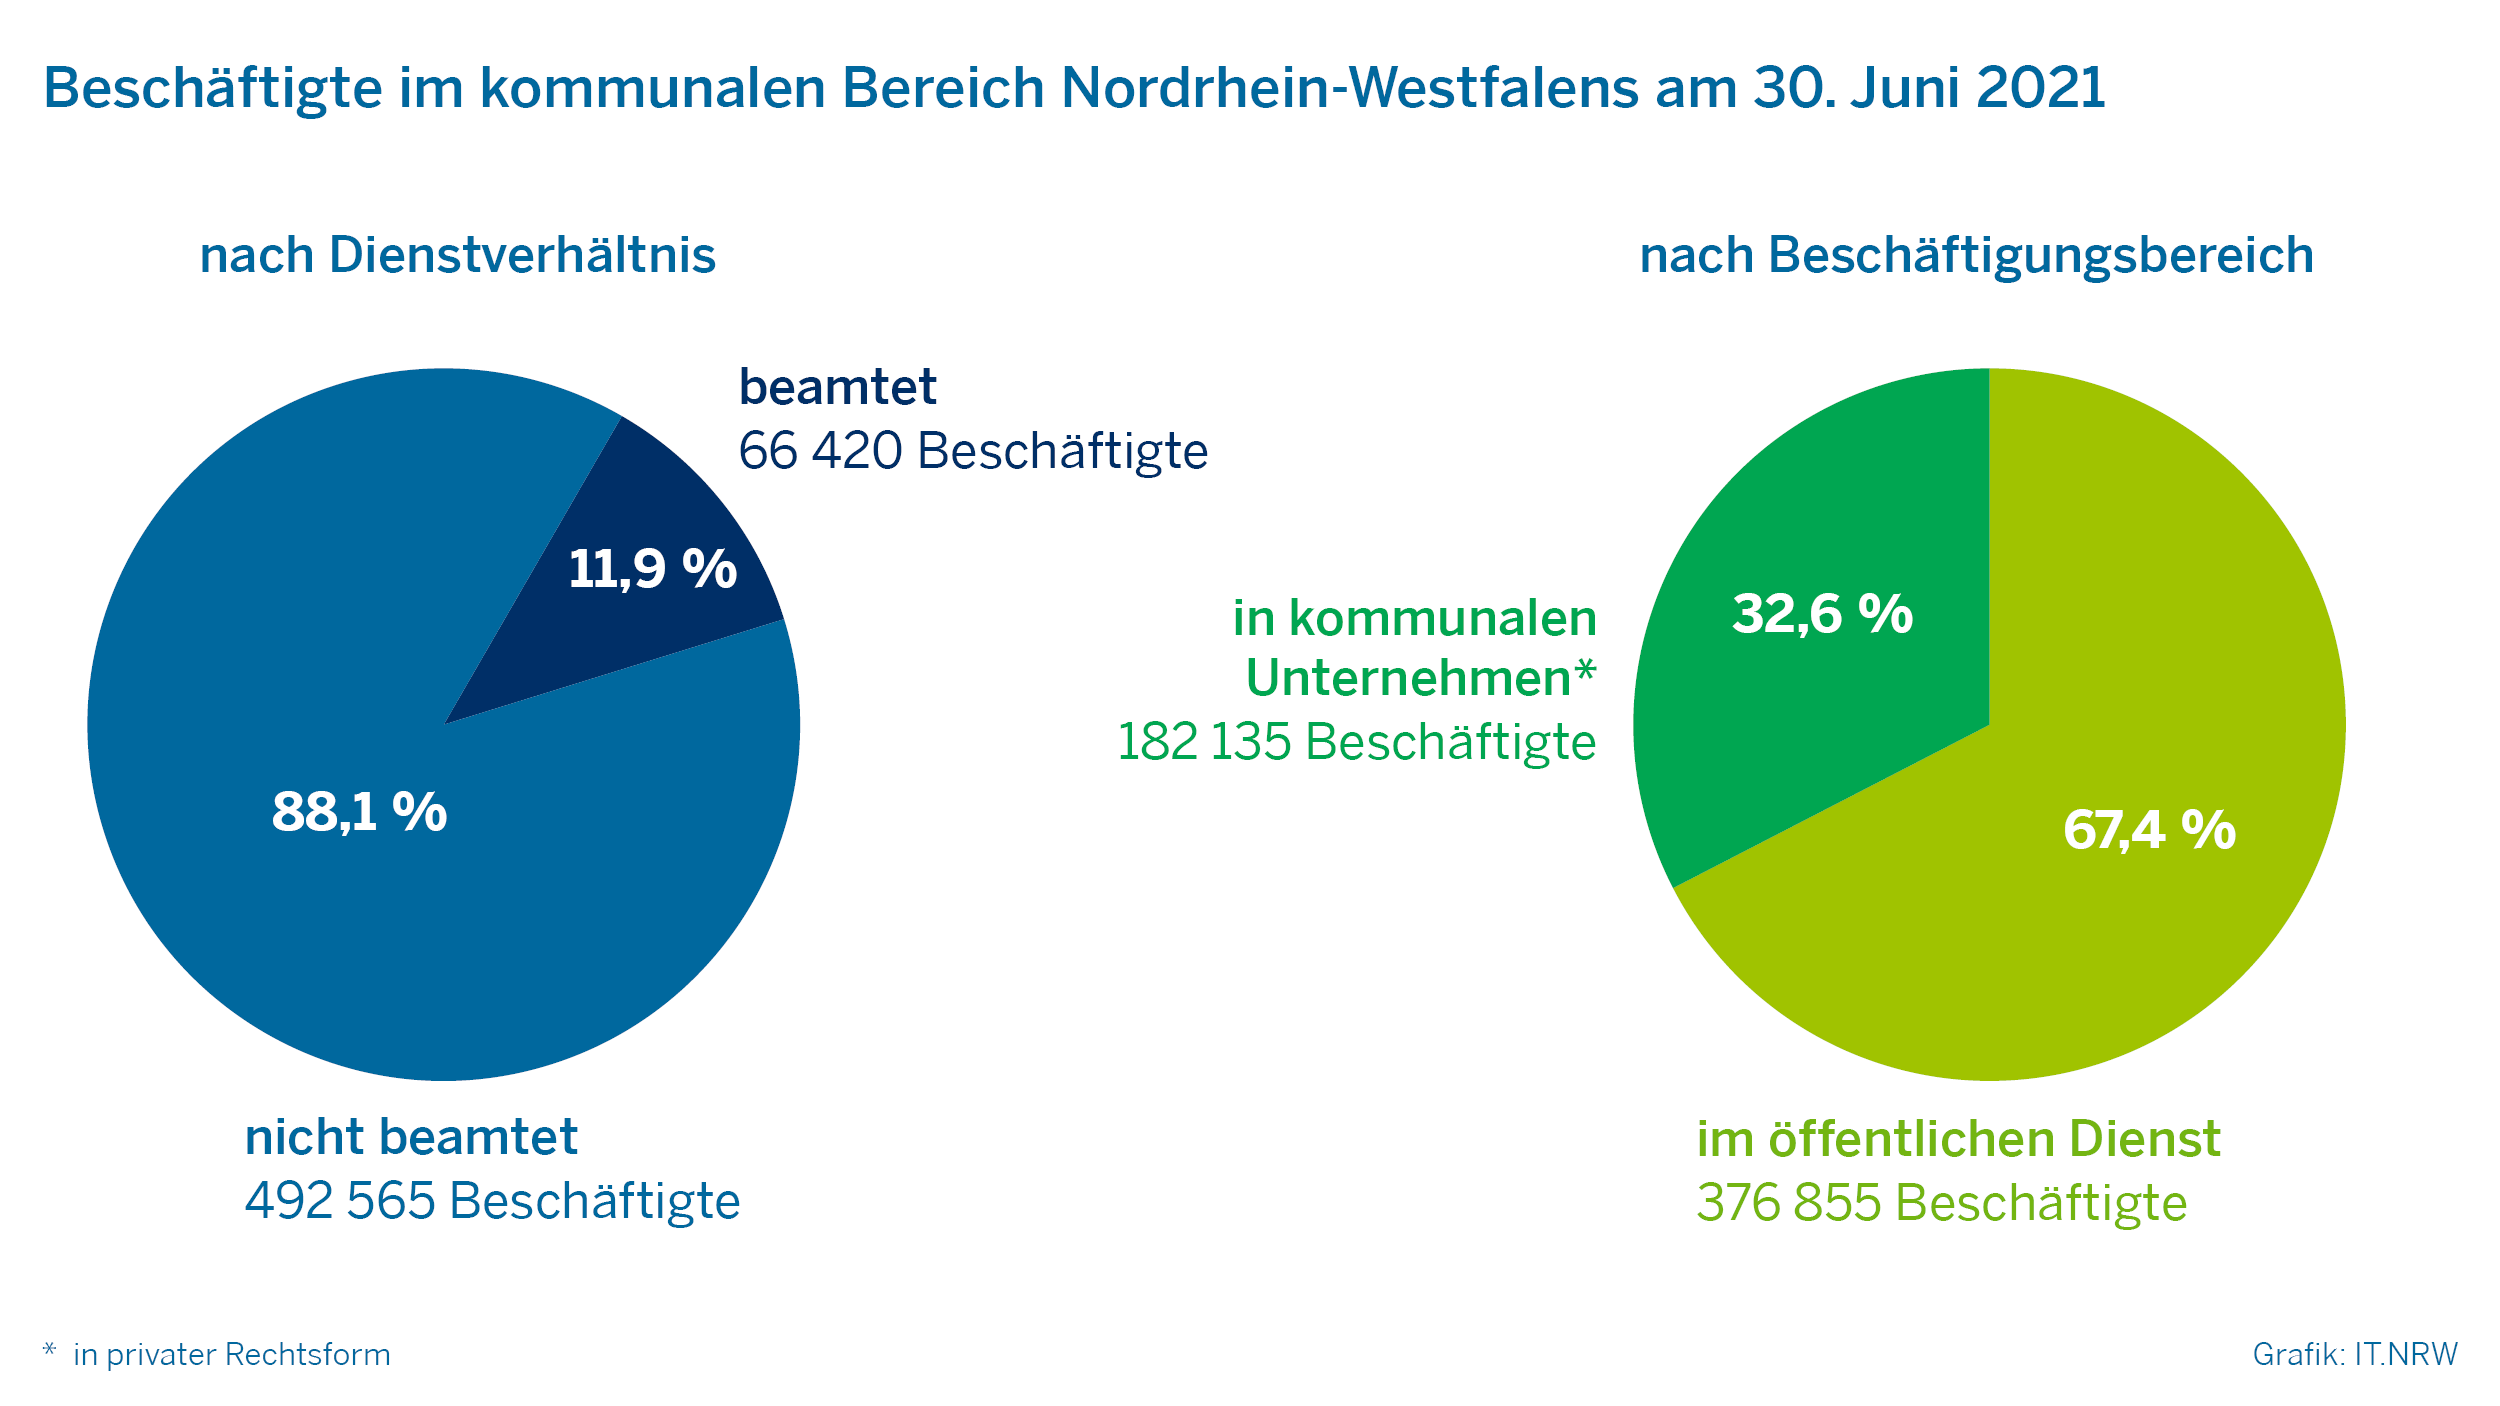 Beschäftigte im kommunalen Bereich Nordrhein-Westfalens am 30. Juni 2021